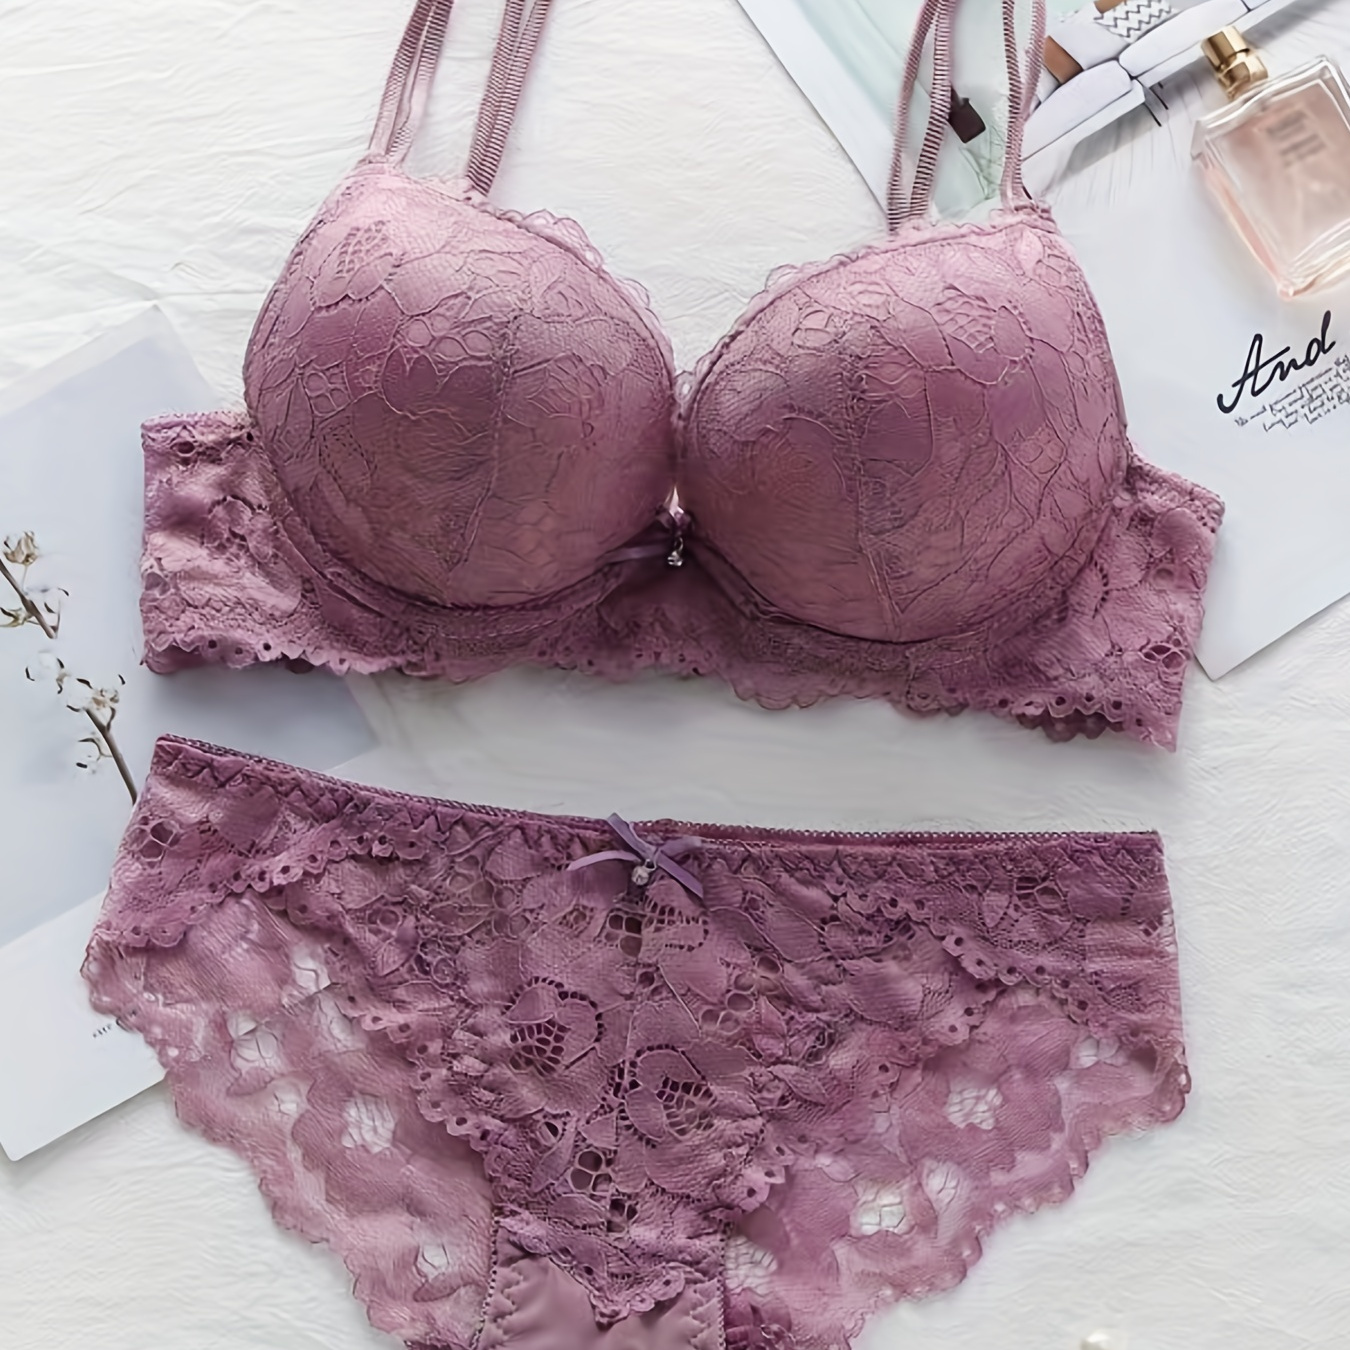 

Contrast Lace Bras & Panties, Double Straps Push Up Bras & Hollow Bikini Panties Lingerie Set, Women's Lingerie & Underwear